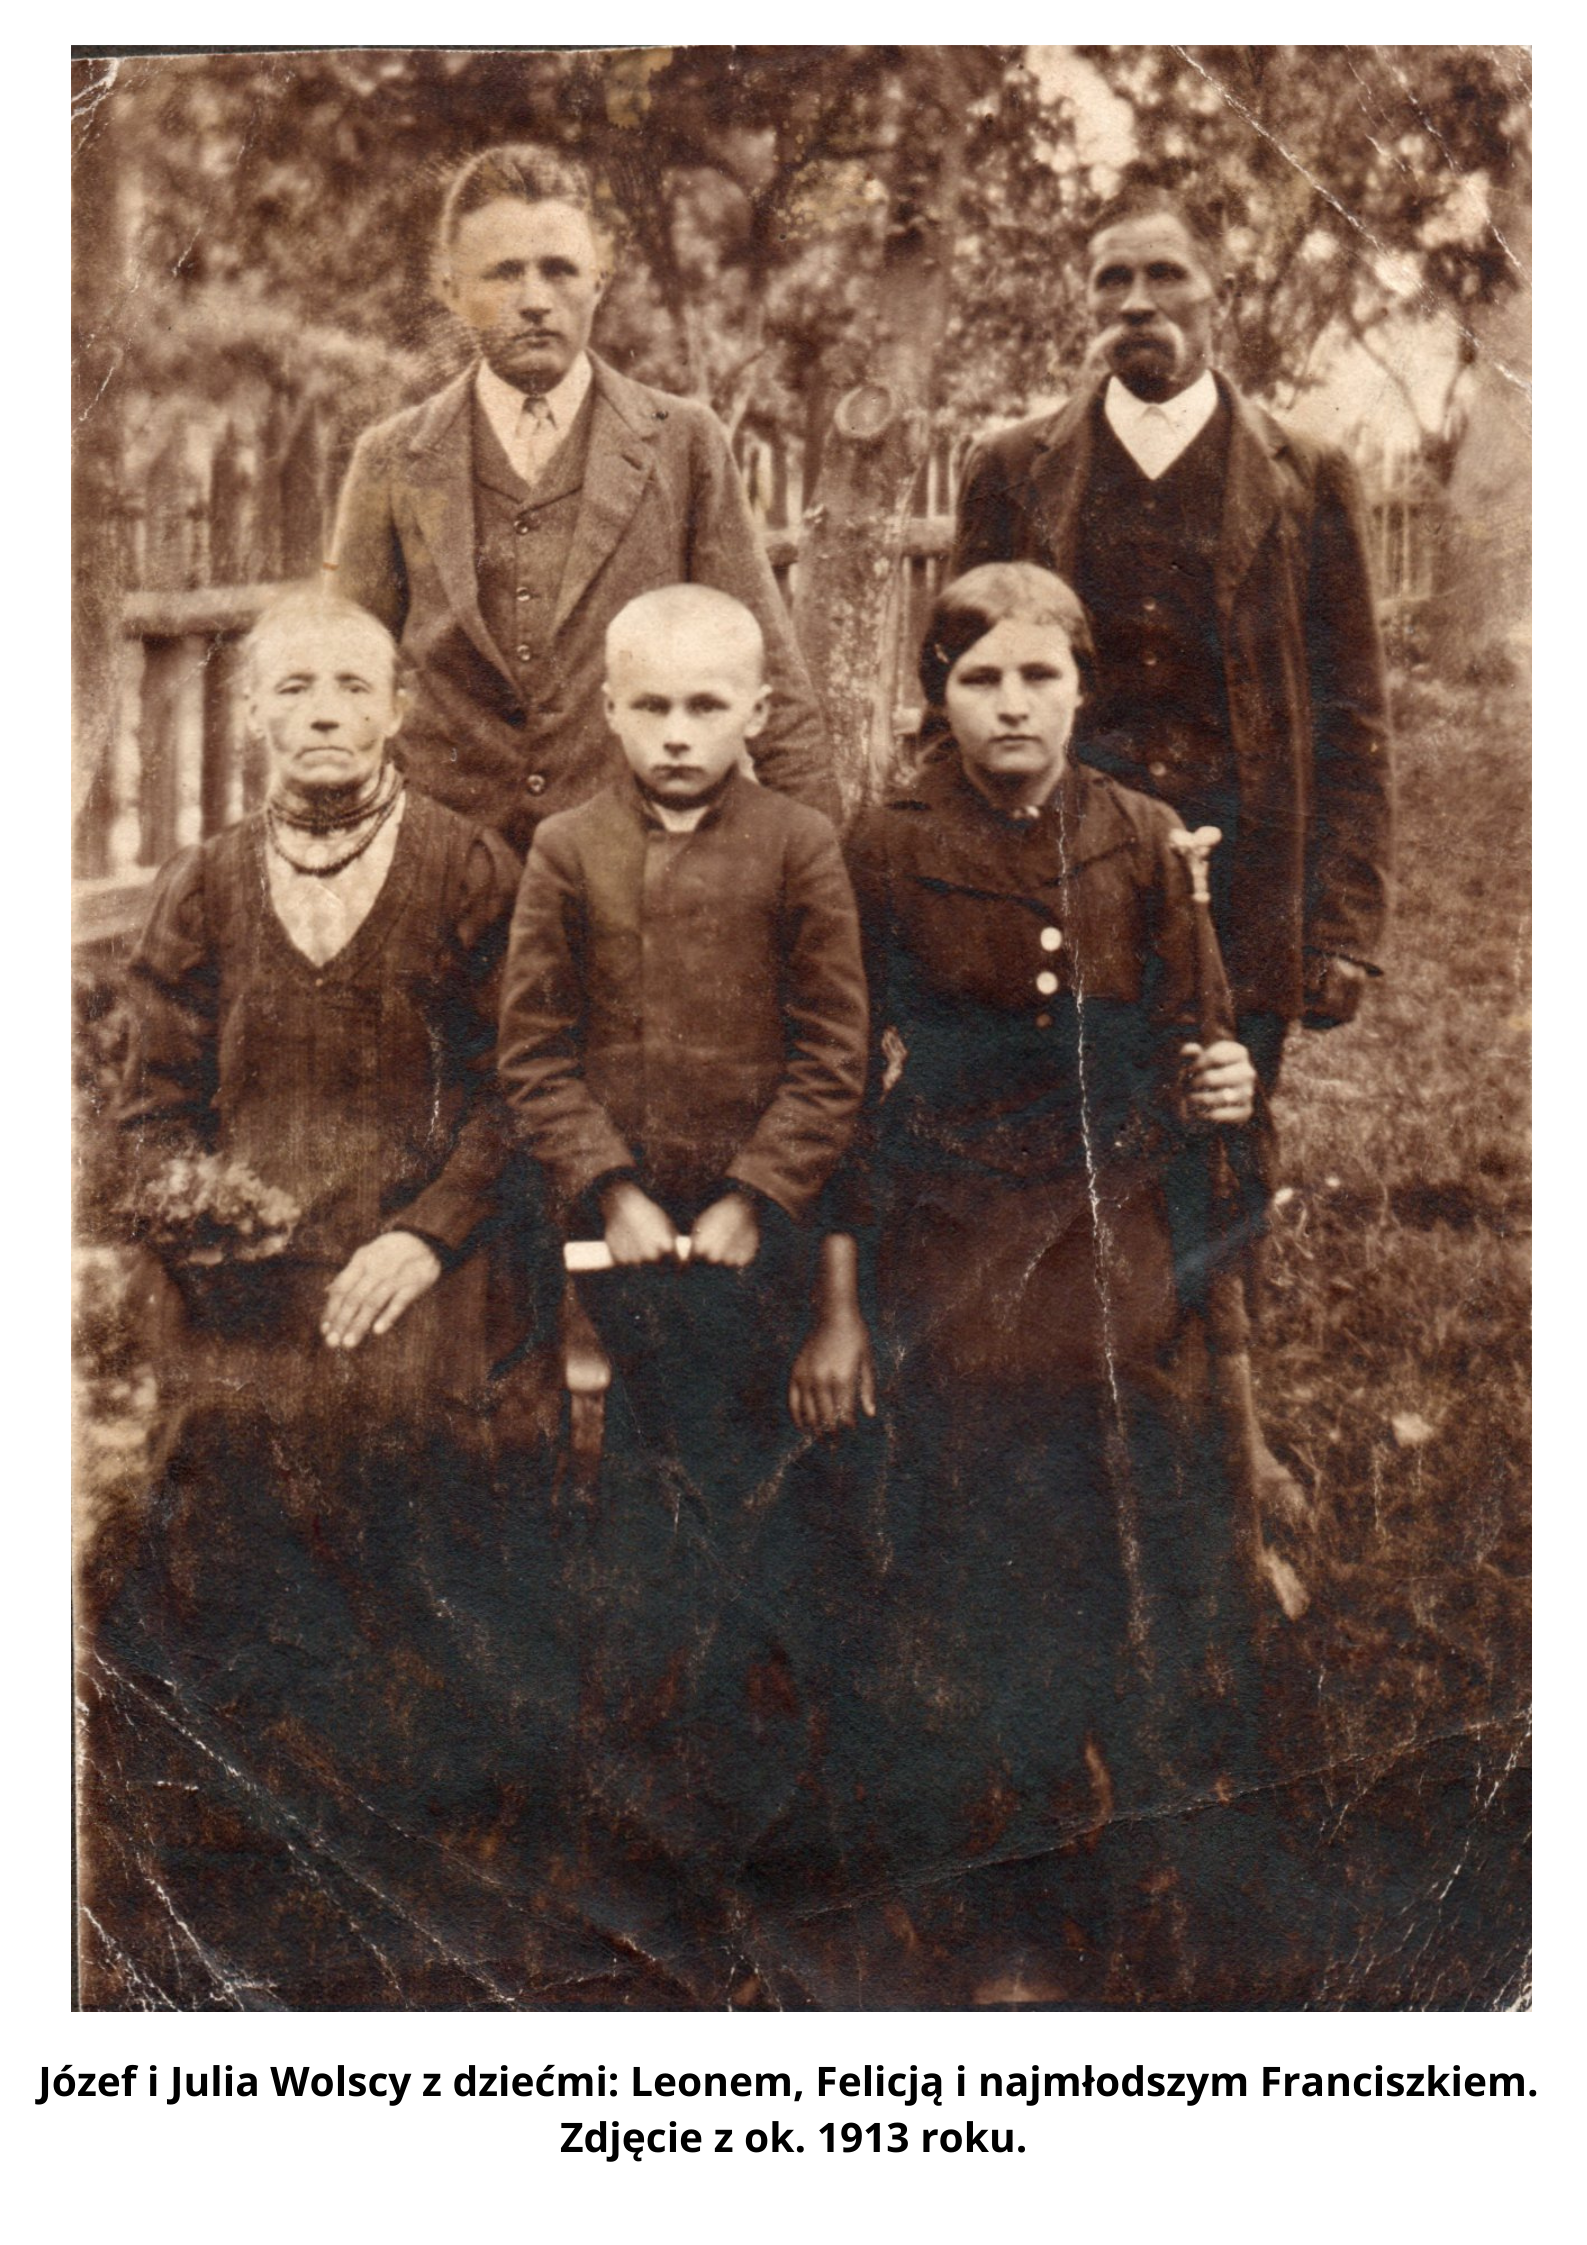 Józef i Julia Wolscy z dziećmi: Leonem, Felicją i najmłodszym Franciszkiem. Zdjęcie z ok. 1913 roku.